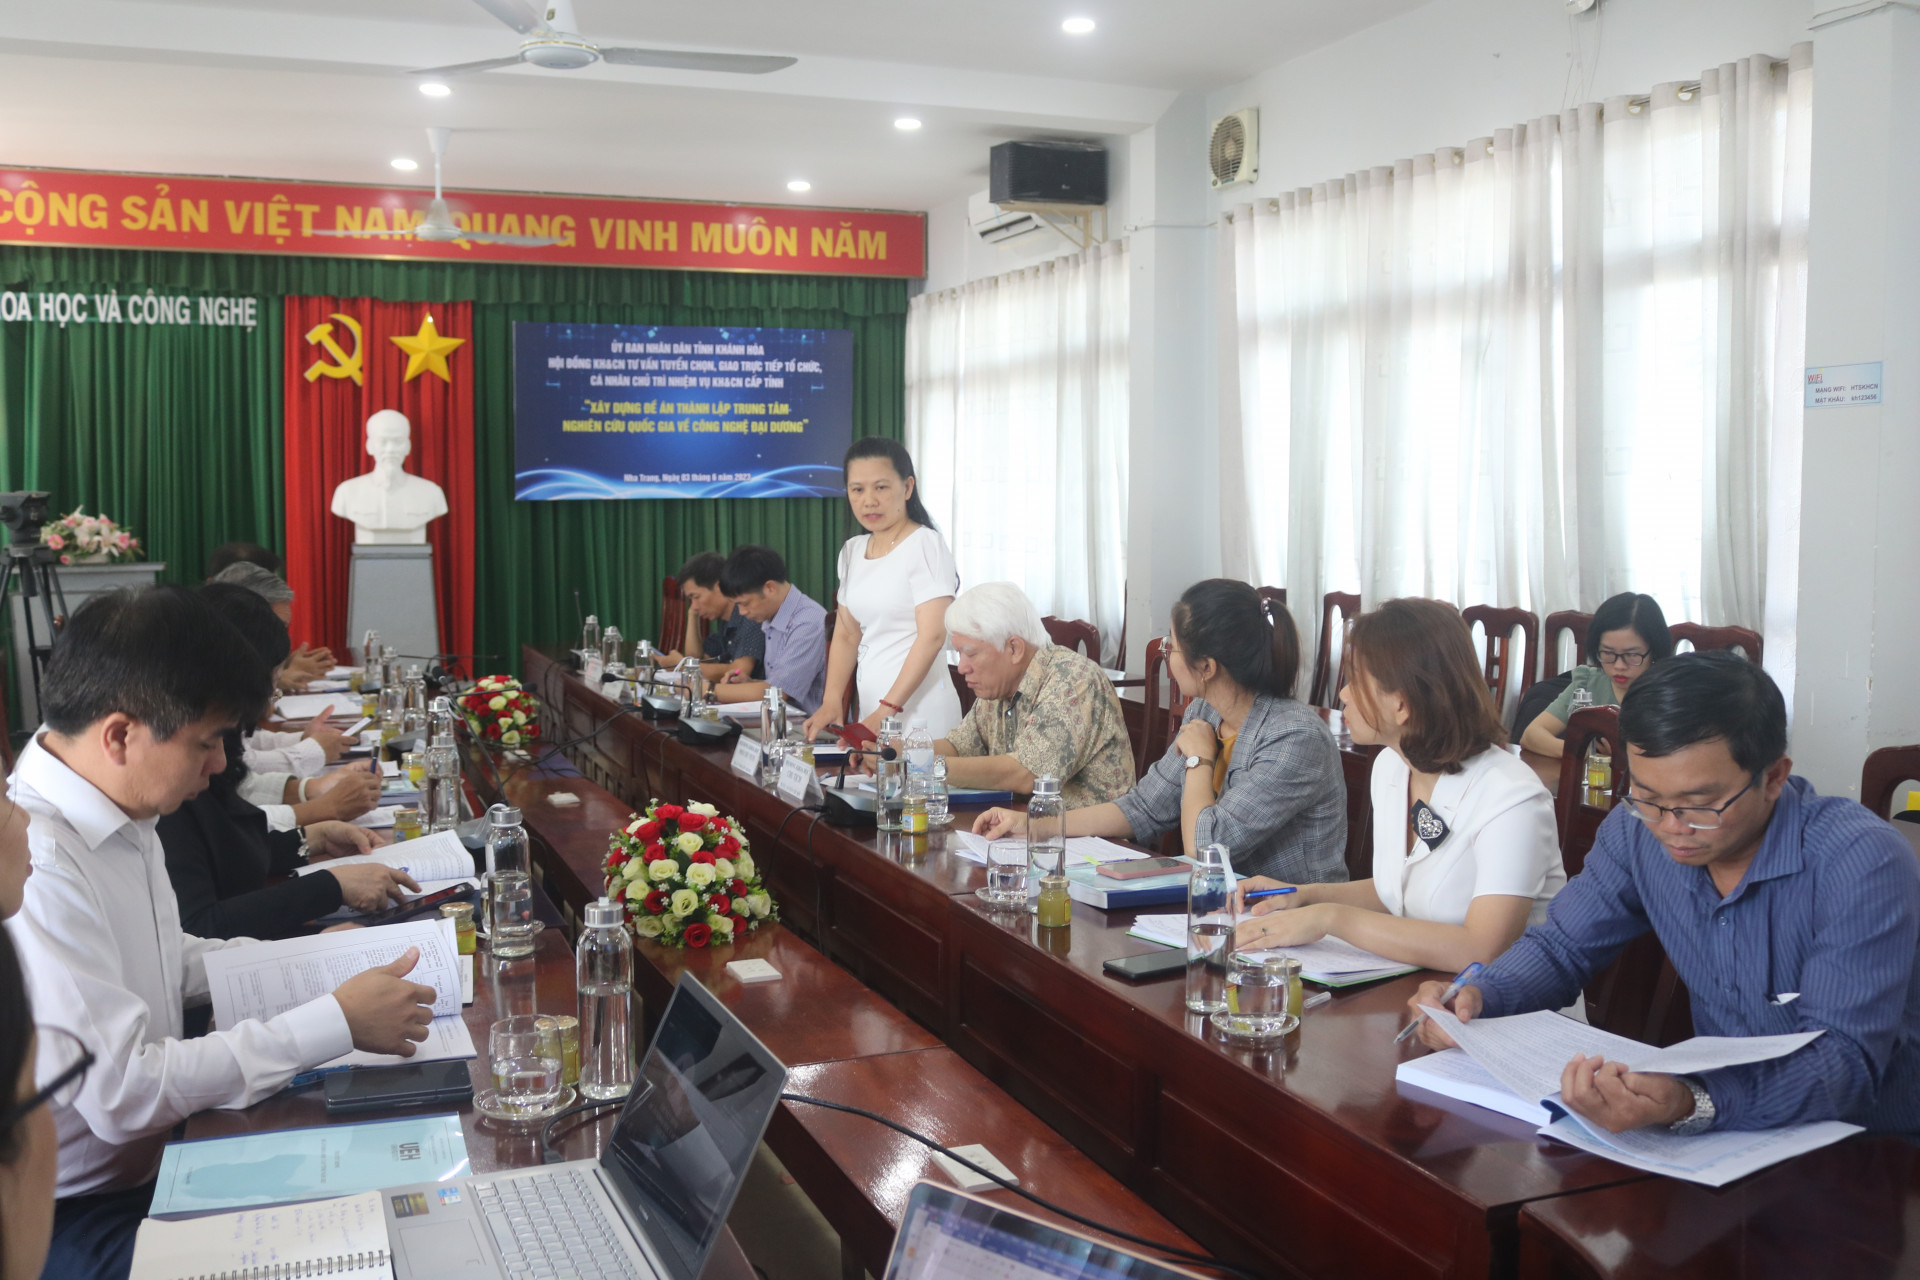 Bà Lê Vinh Liên Trang - Giám đốc Sở Khoa học và Công nghệ thông báo tình hình xây dựng đề án